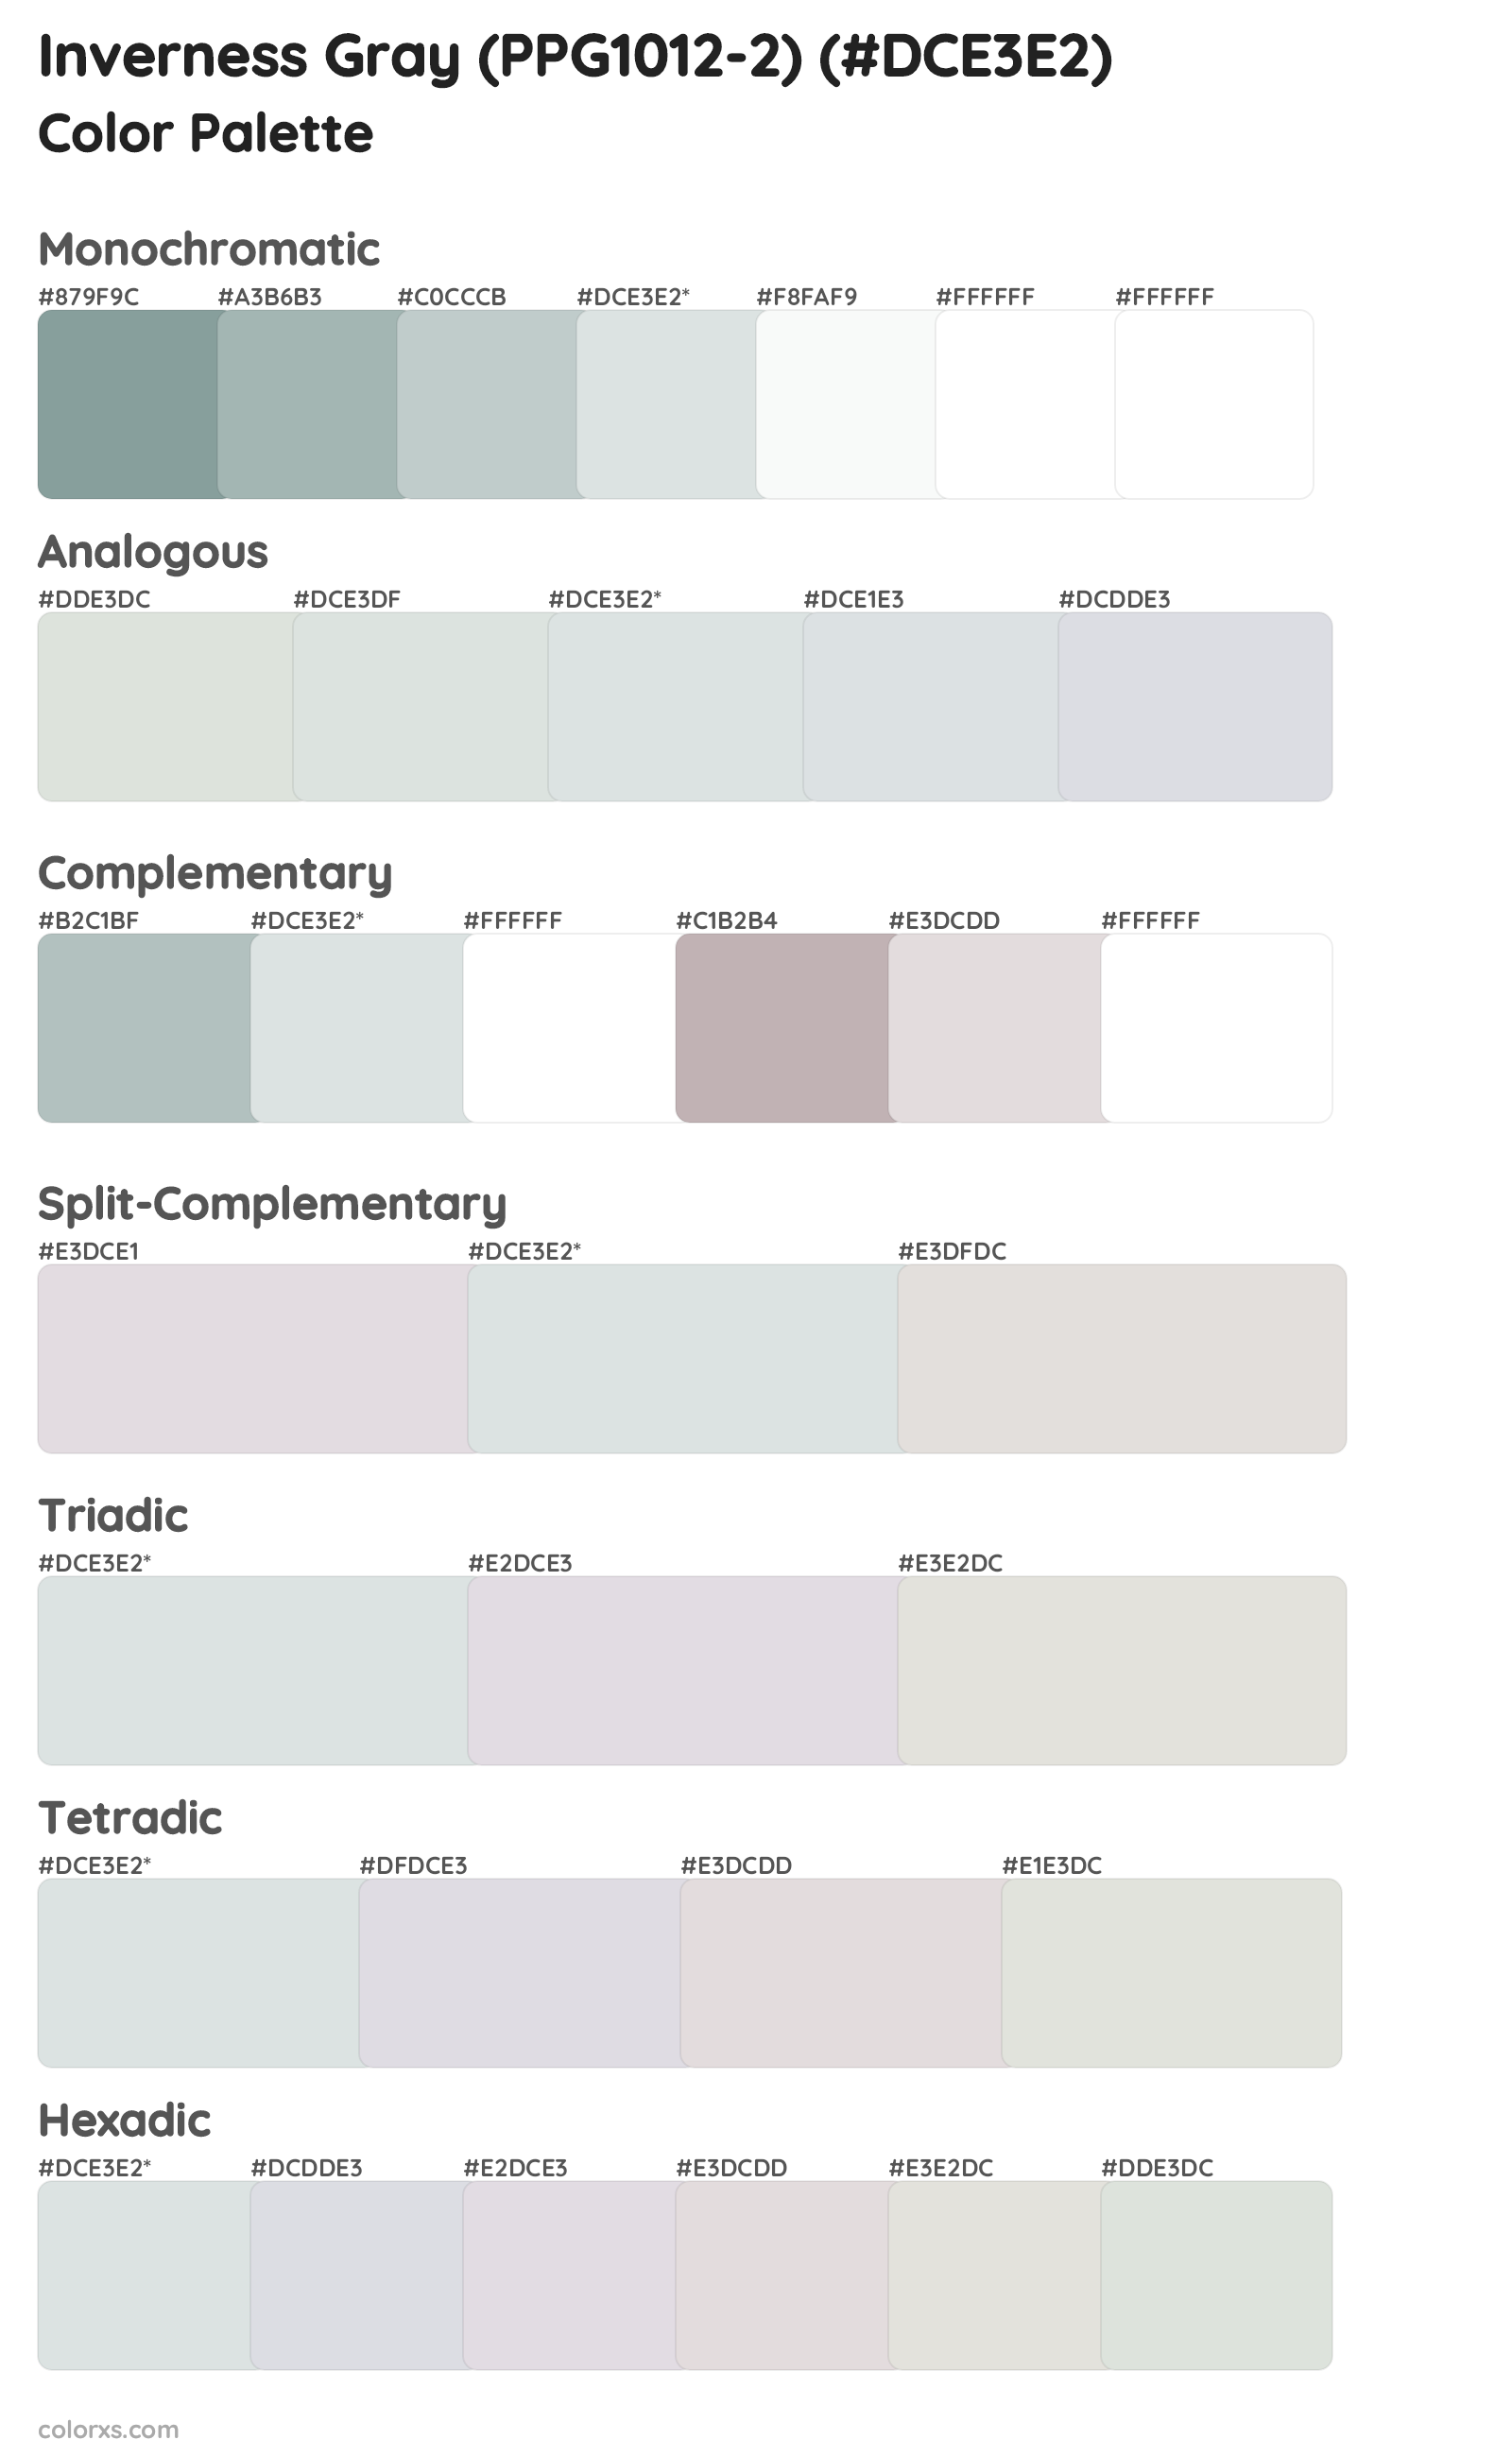 Inverness Gray (PPG1012-2) Color Scheme Palettes